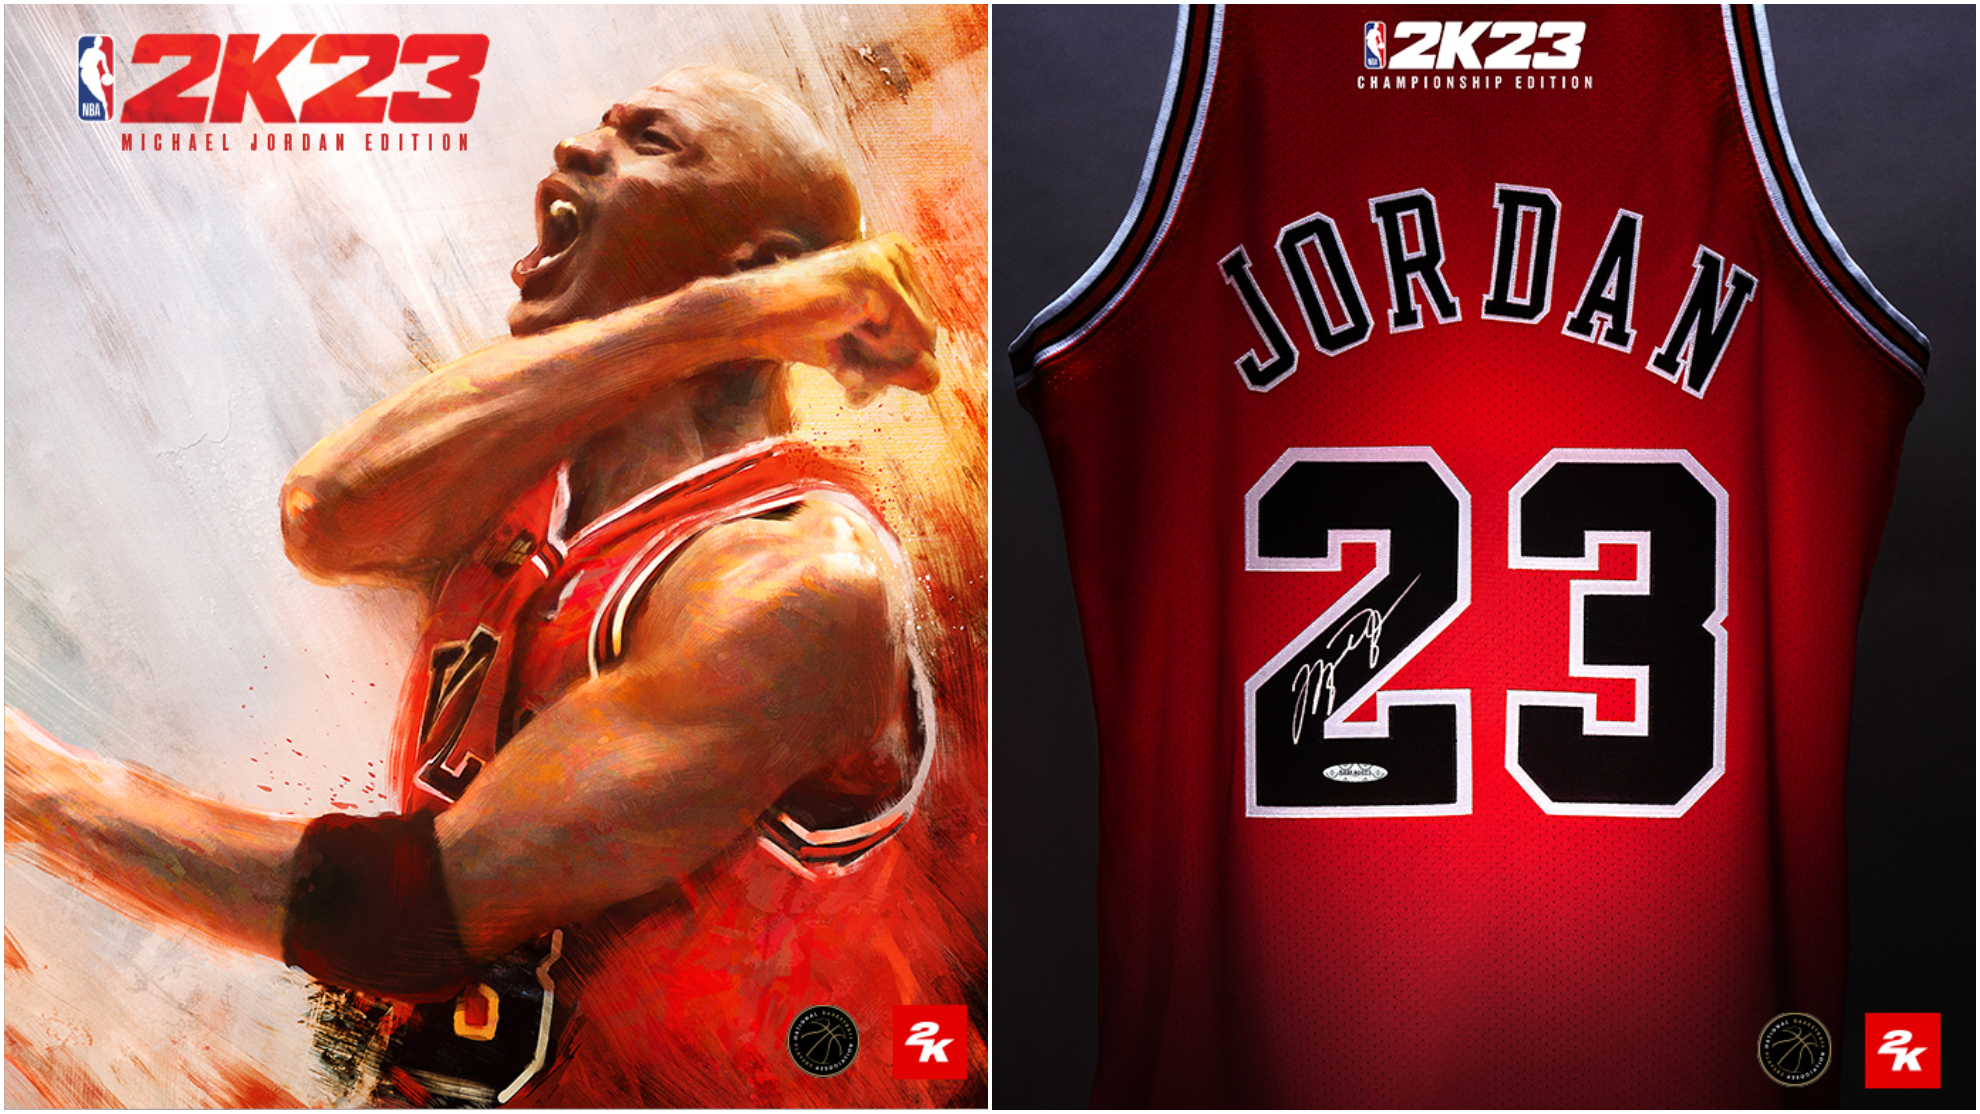 Michael Jordan named cover athlete for NBA 2K23 video game